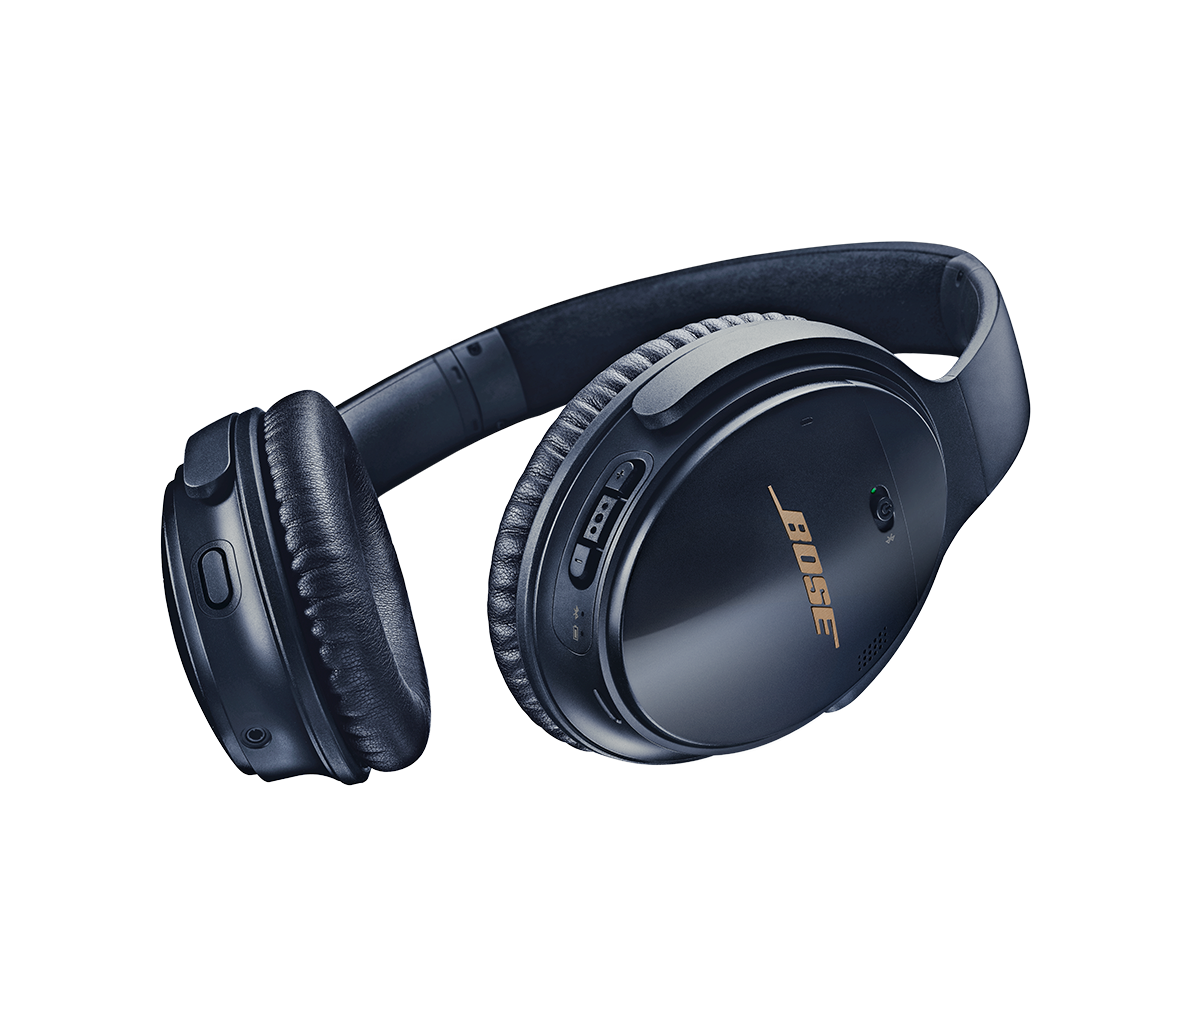 QuietComfort 35 wireless headphones II - Bose Product Support